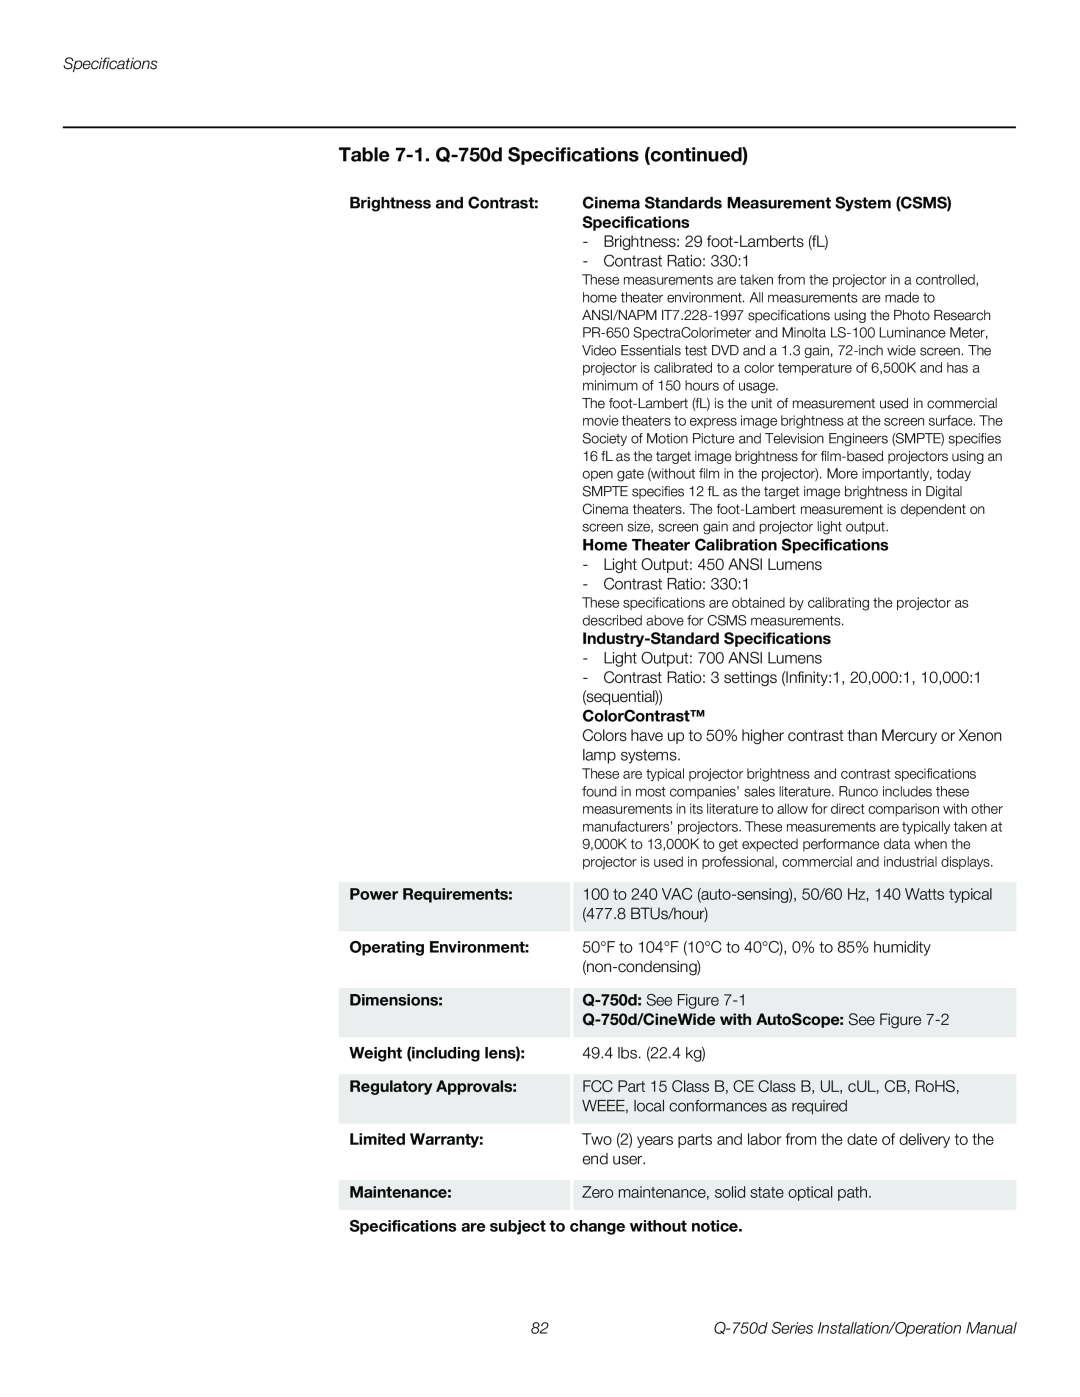 Runco Q-750D operation manual 1. Q-750dSpecifications continued 